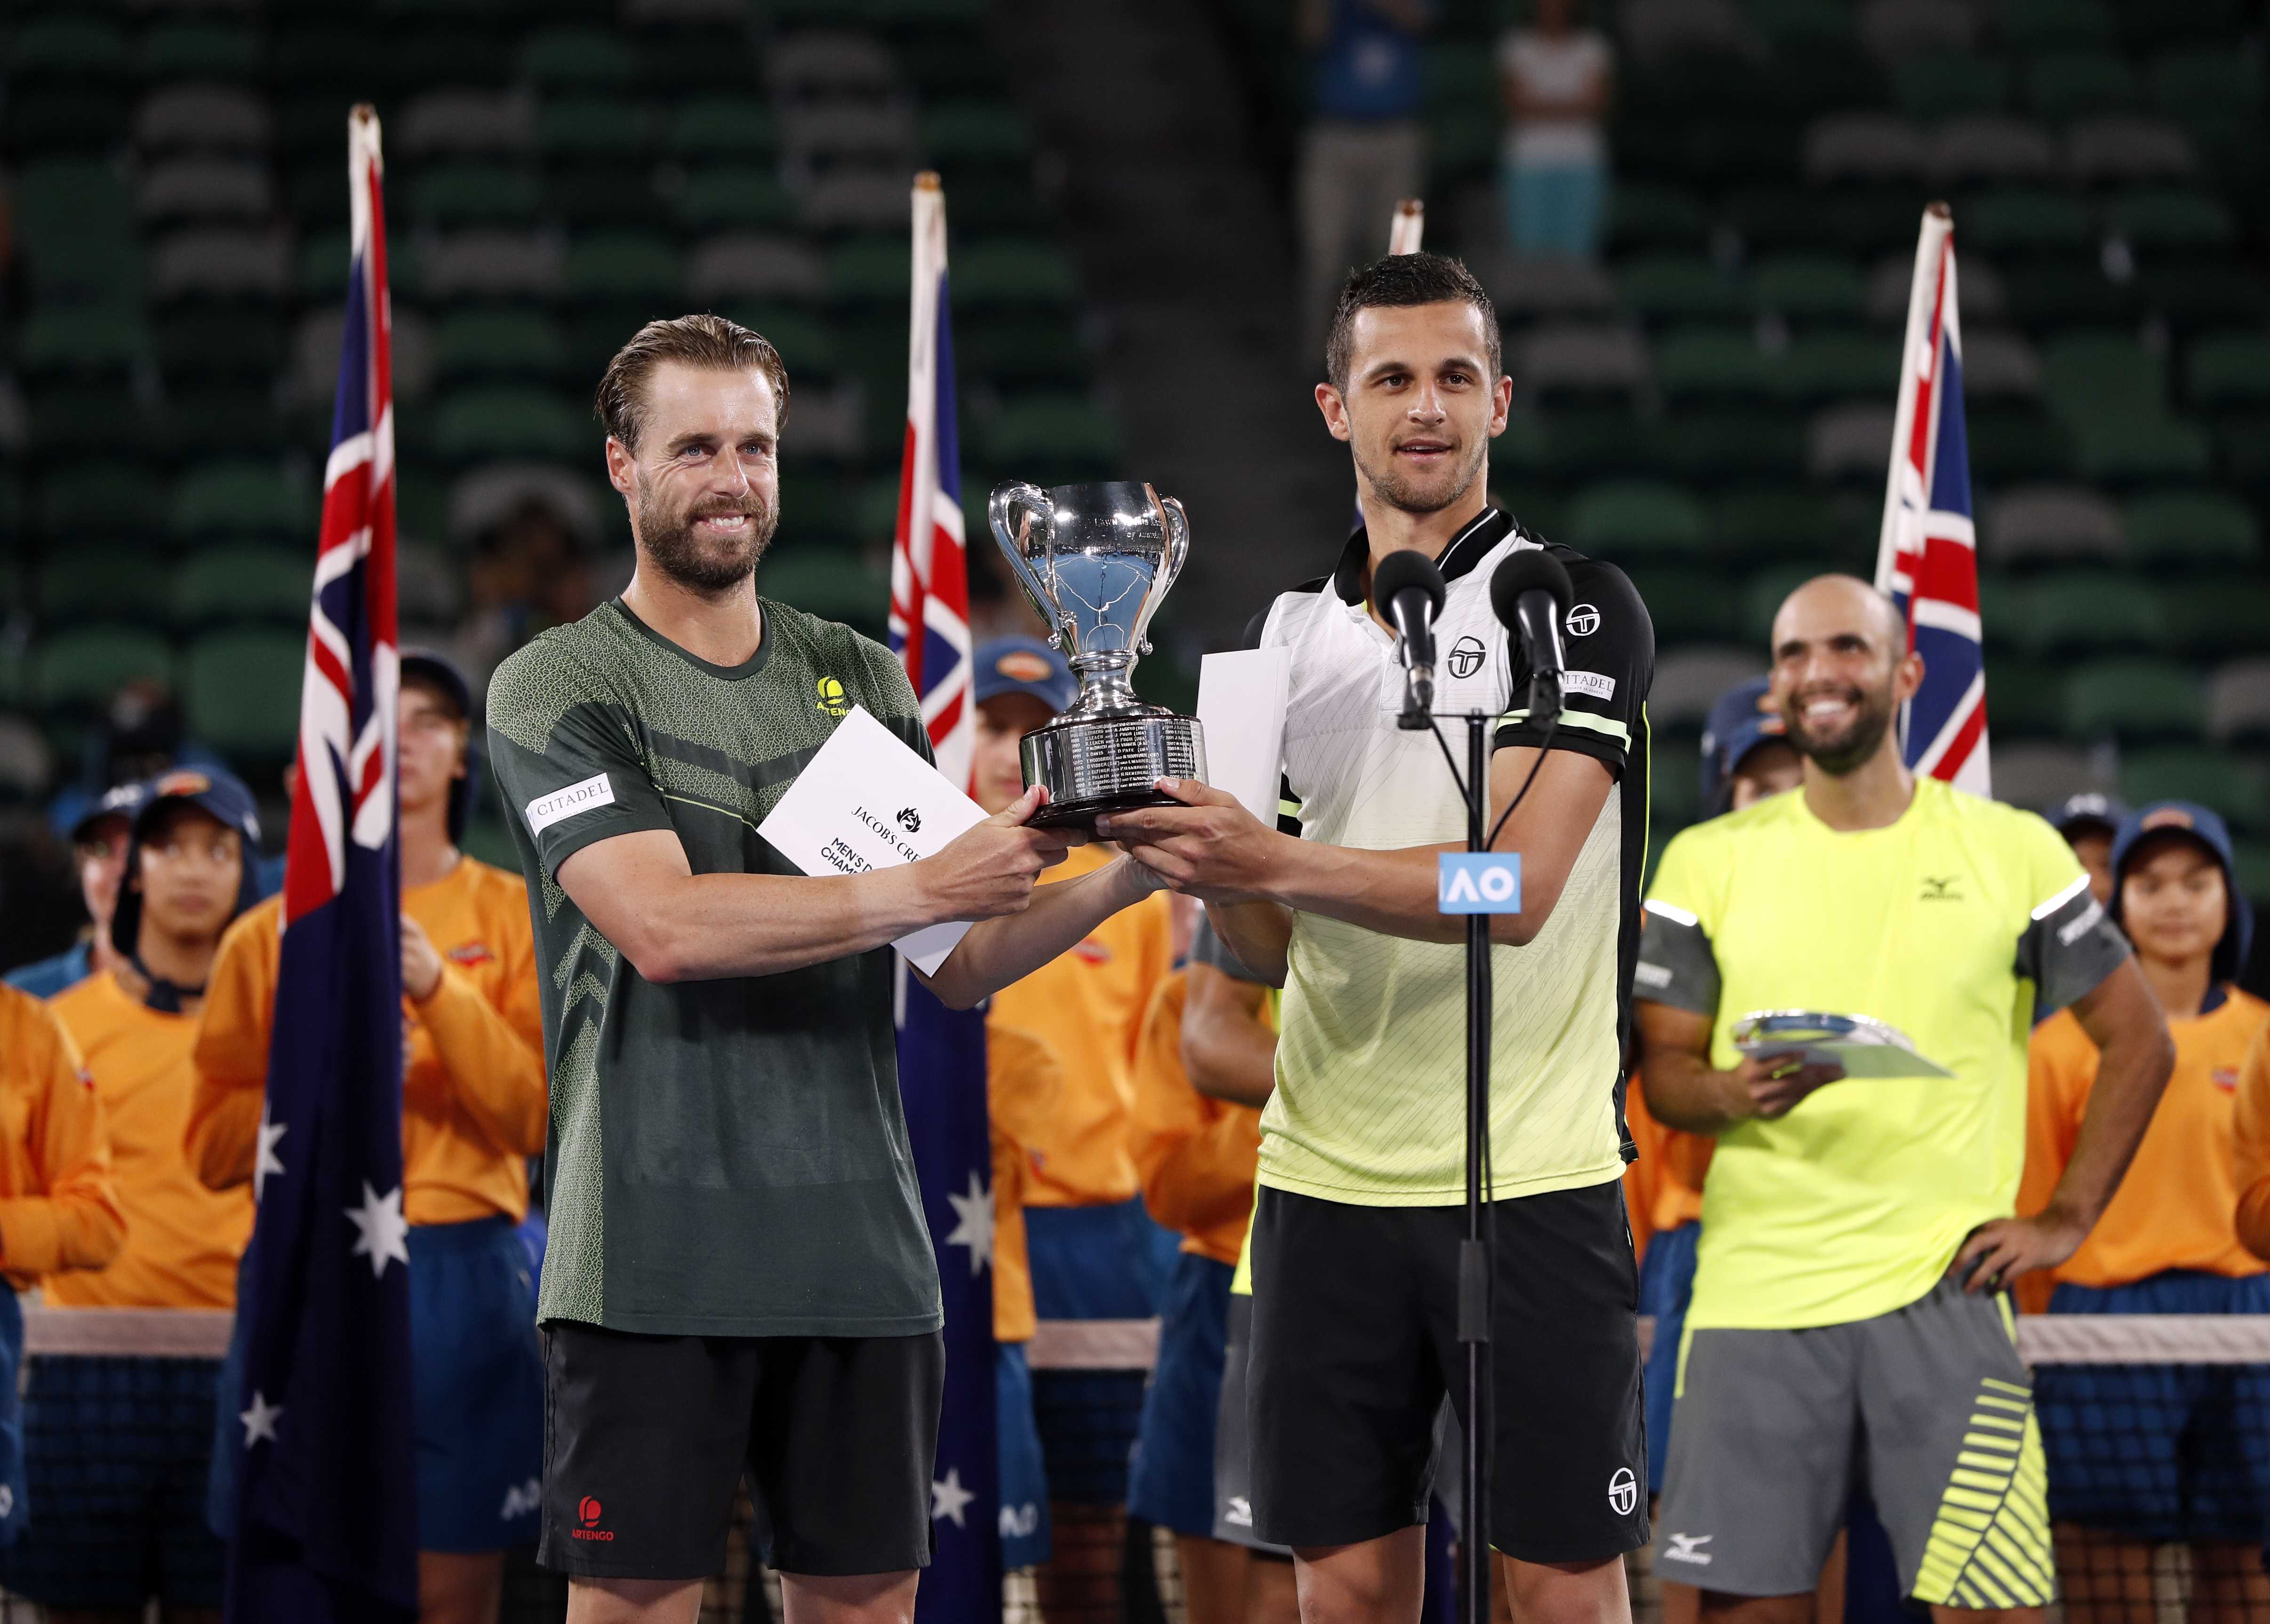 Tennis: Marach, Pavic claim Australian Open men's doubles crown